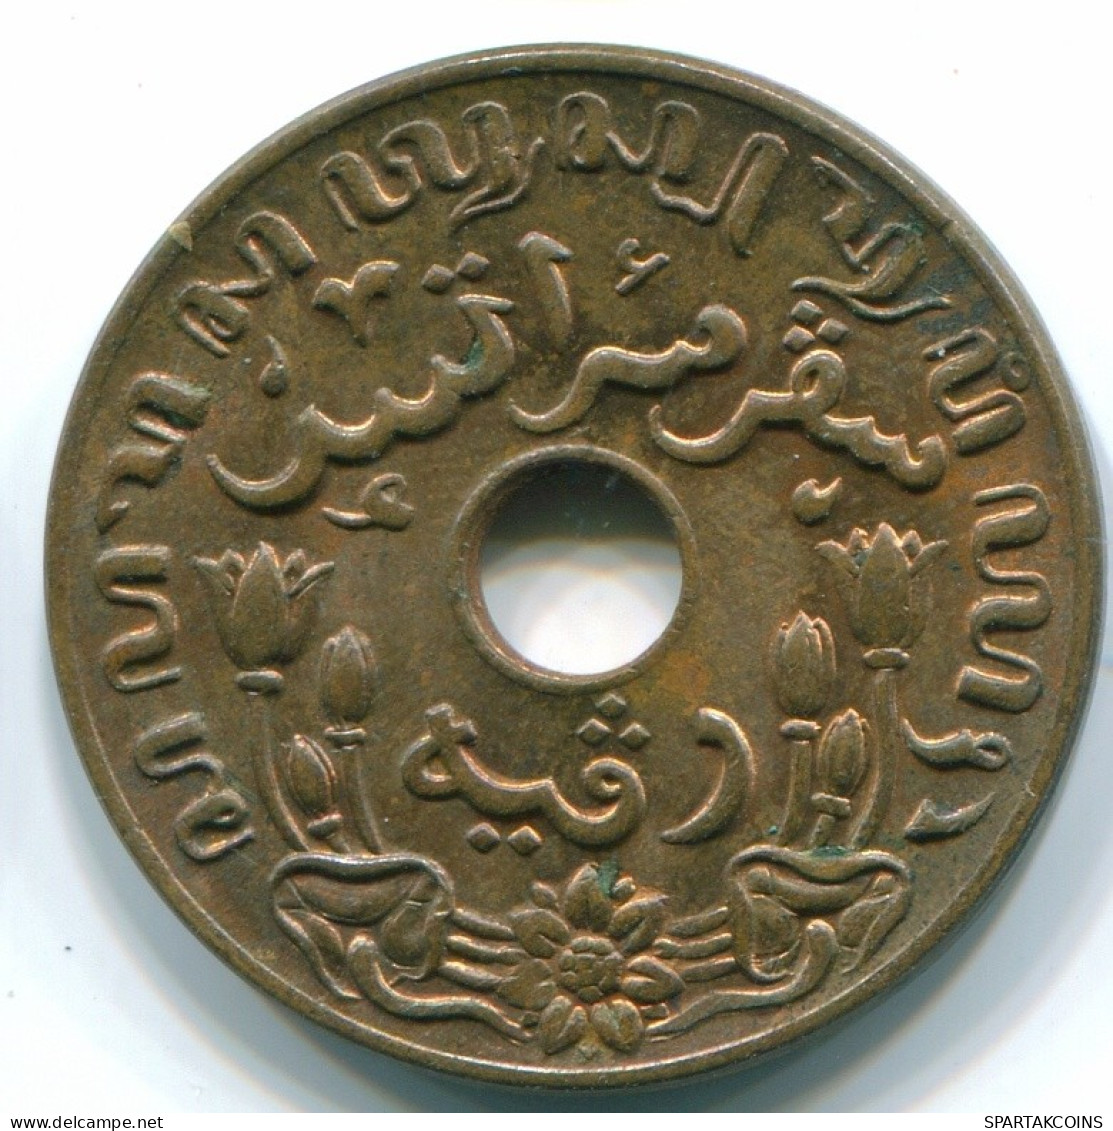 1 CENT 1942 INDES ORIENTALES NÉERLANDAISES INDONÉSIE Bronze Colonial Pièce #S10306.F.A - Dutch East Indies